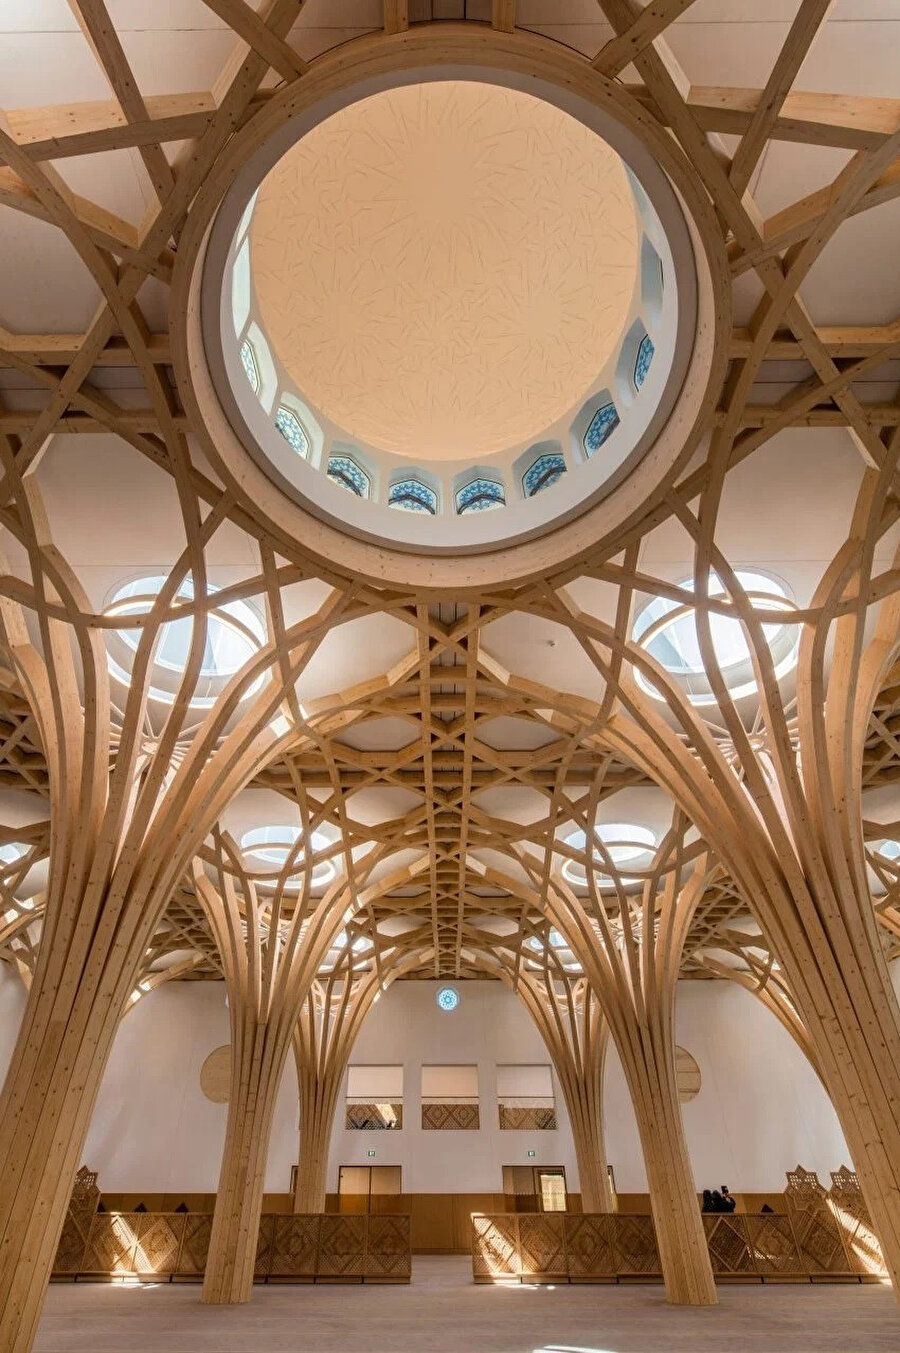 Mimarlar cami içerisinde huzurlu bir ambiyans oluşturmak için çatıyı iç içe geçmiş, sekizgen bir örtü şeklinde tutan ağaç benzeri sütunlar tasarlıyor.